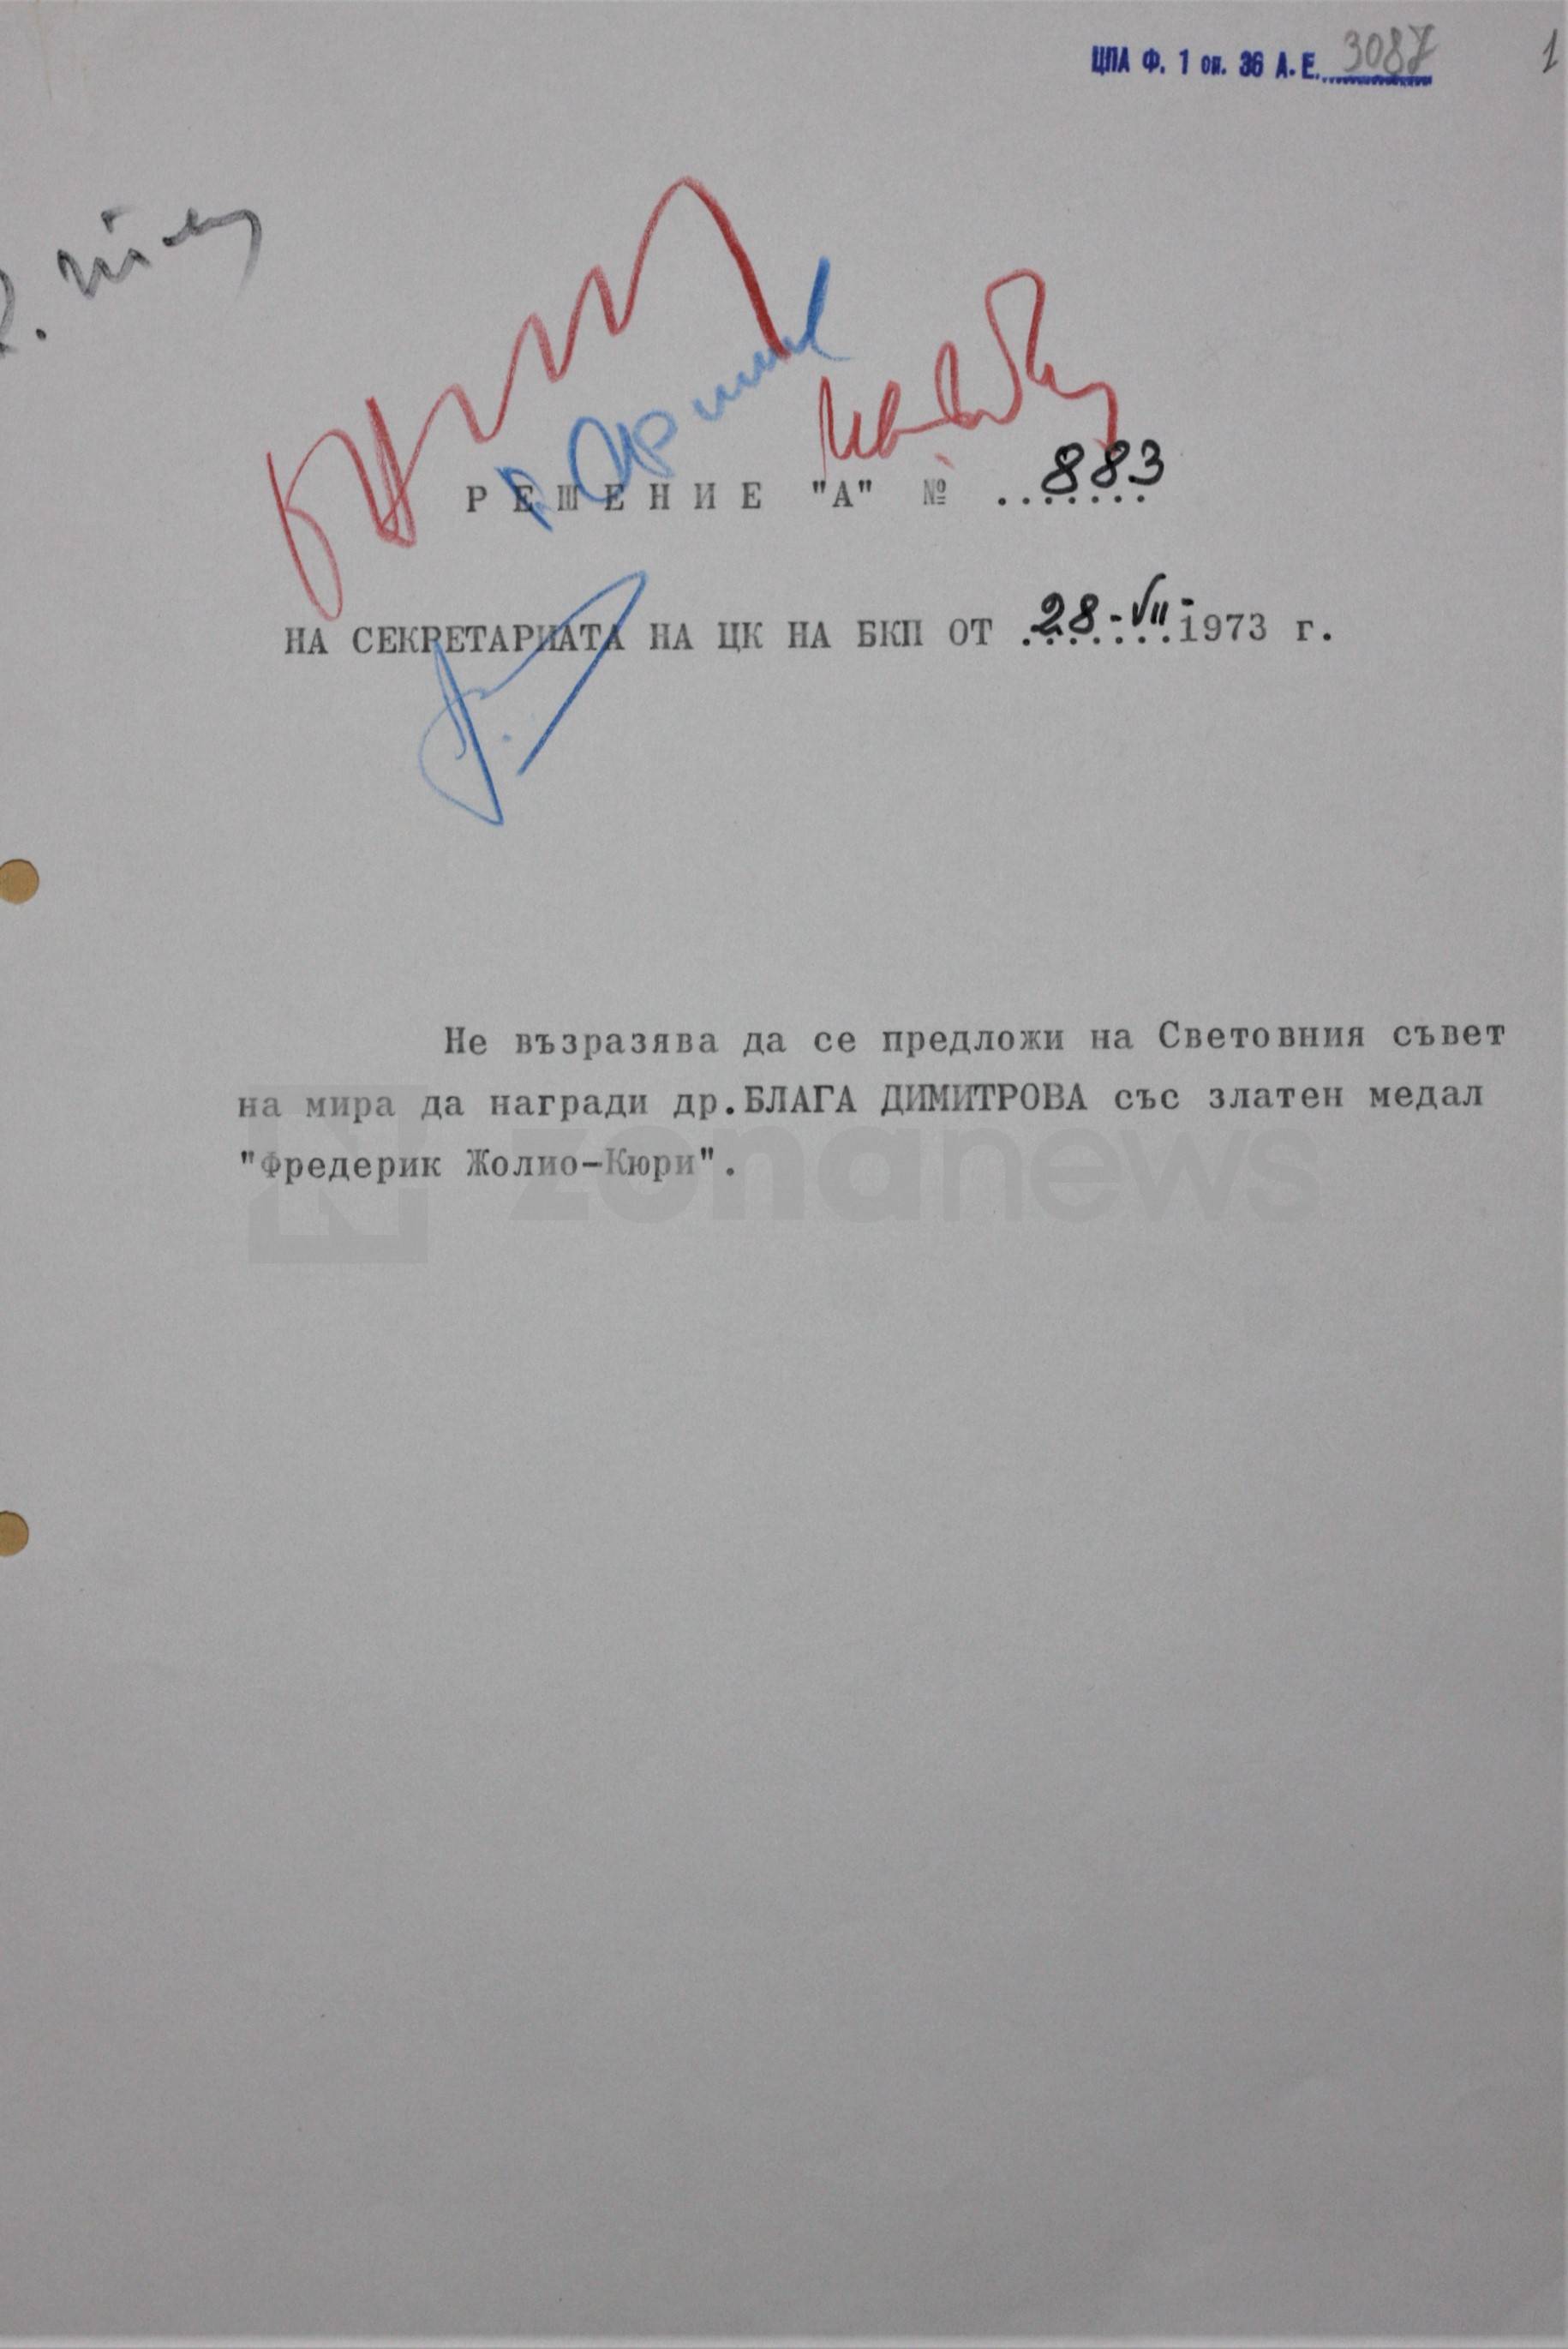 Решение на Секретариата на ЦК на БКП за награждаване на Блага Димитрова